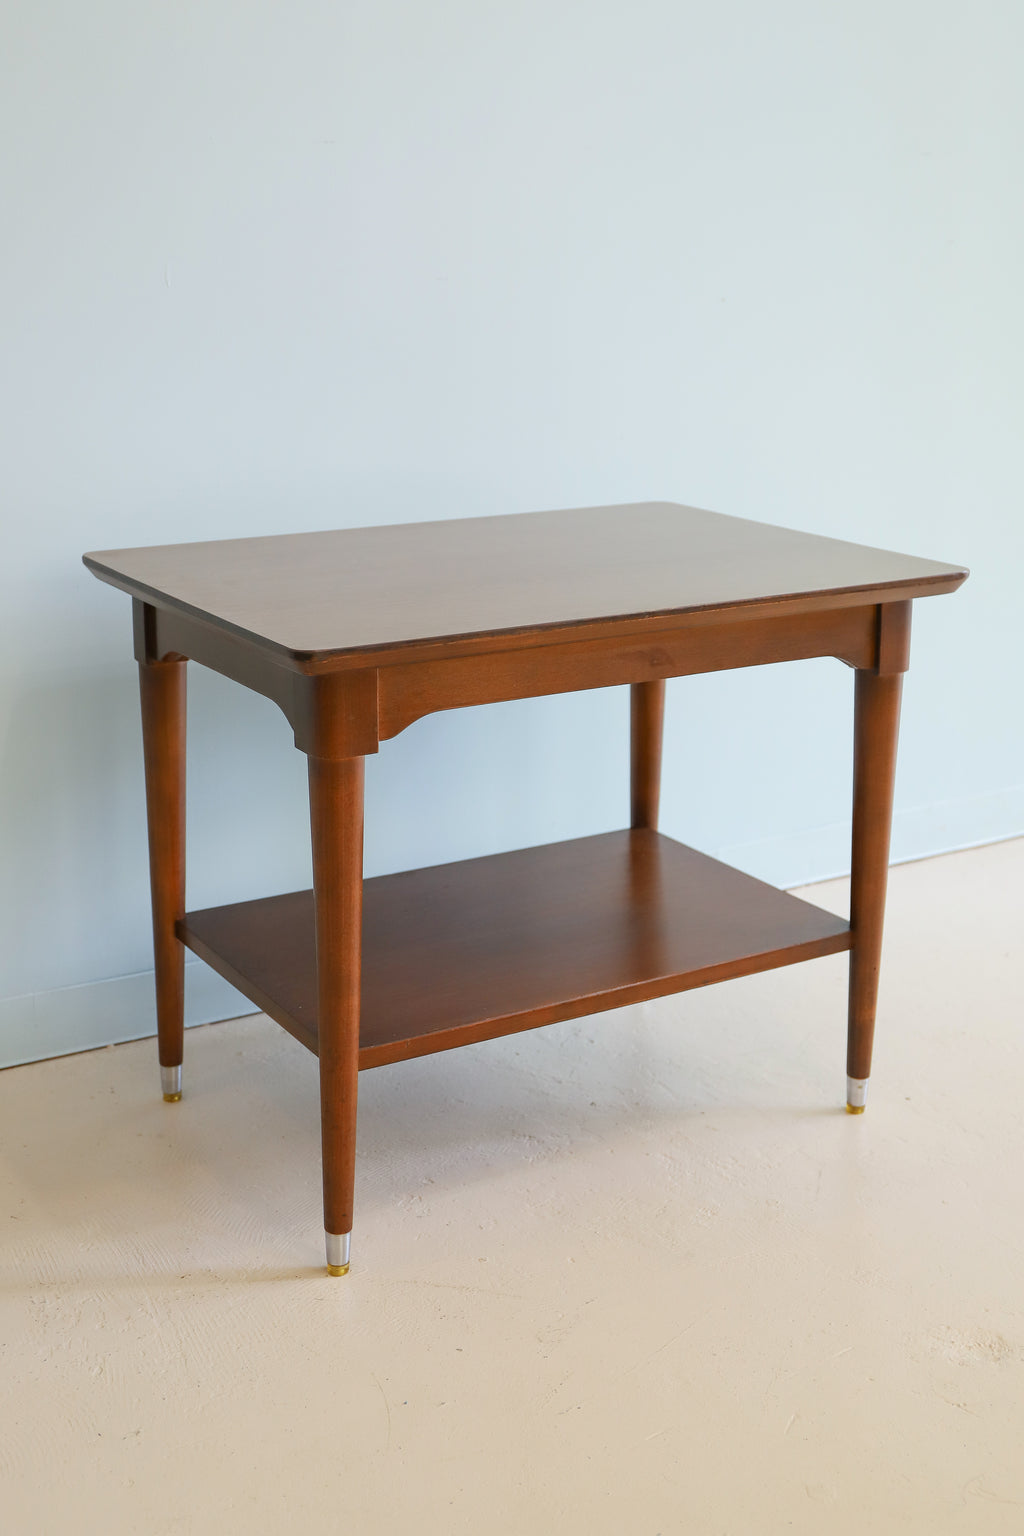 限定値下げ【米軍家具】1966年 B.P.John Furniture テーブル - 机/テーブル